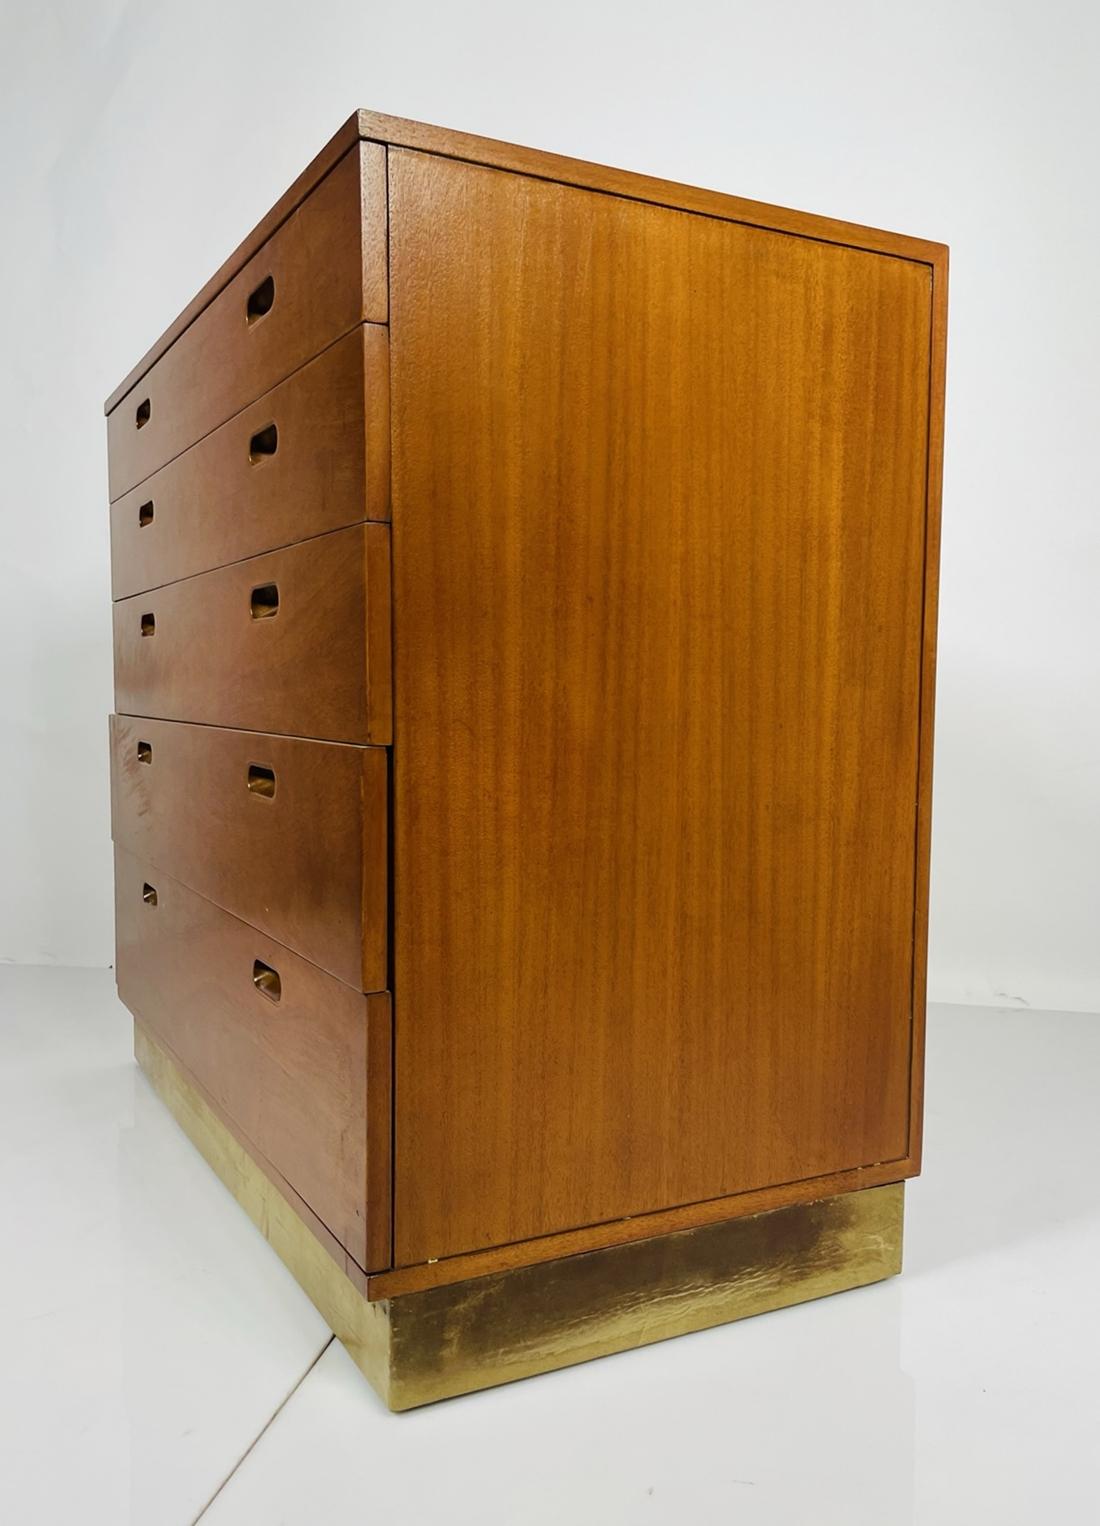 Schöne Kommode, entworfen von Edward Wormley für Dunbar.
Der Schrank hat 5 Schubladen, die oberste Schublade ist mit Unterteilungen für verschiedene Kleidungsstücke versehen.

Das Stück ist in gutem Vintage-Zustand und trägt noch das originale